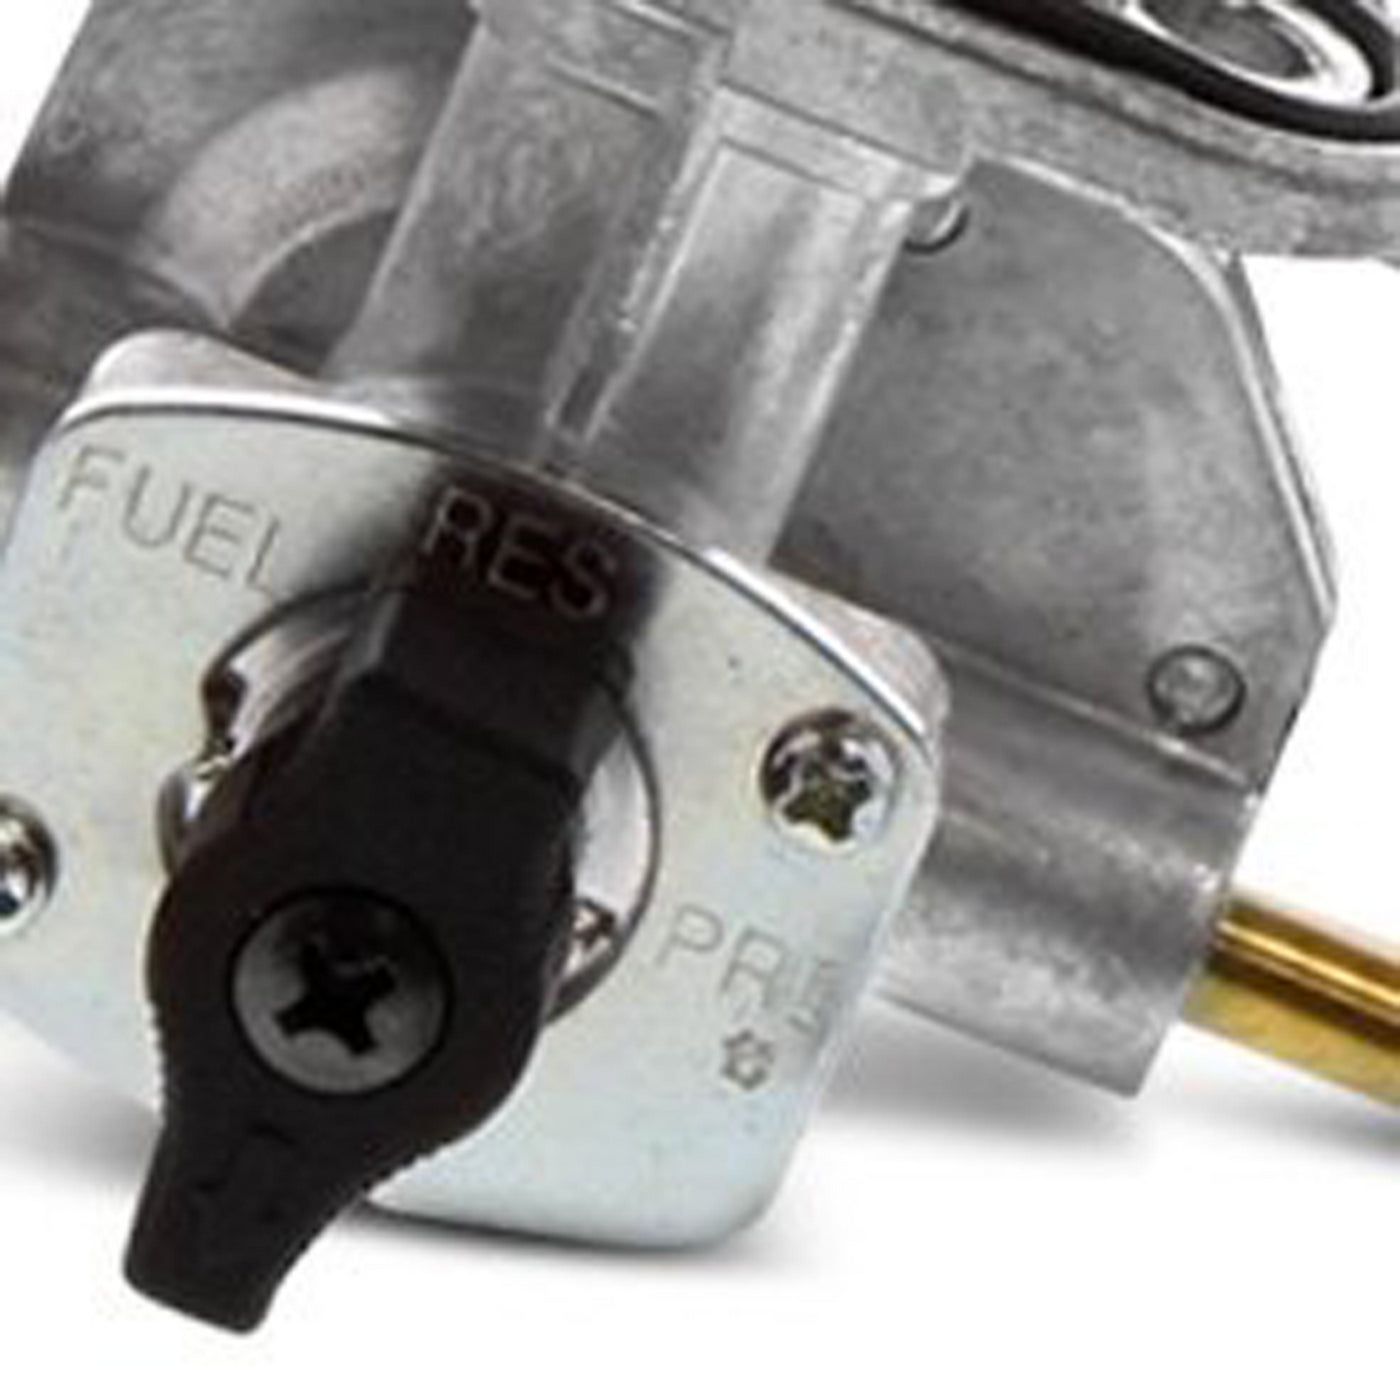 Fuel Star FS101-0131 Fuel Valve Kit #FS101-0131